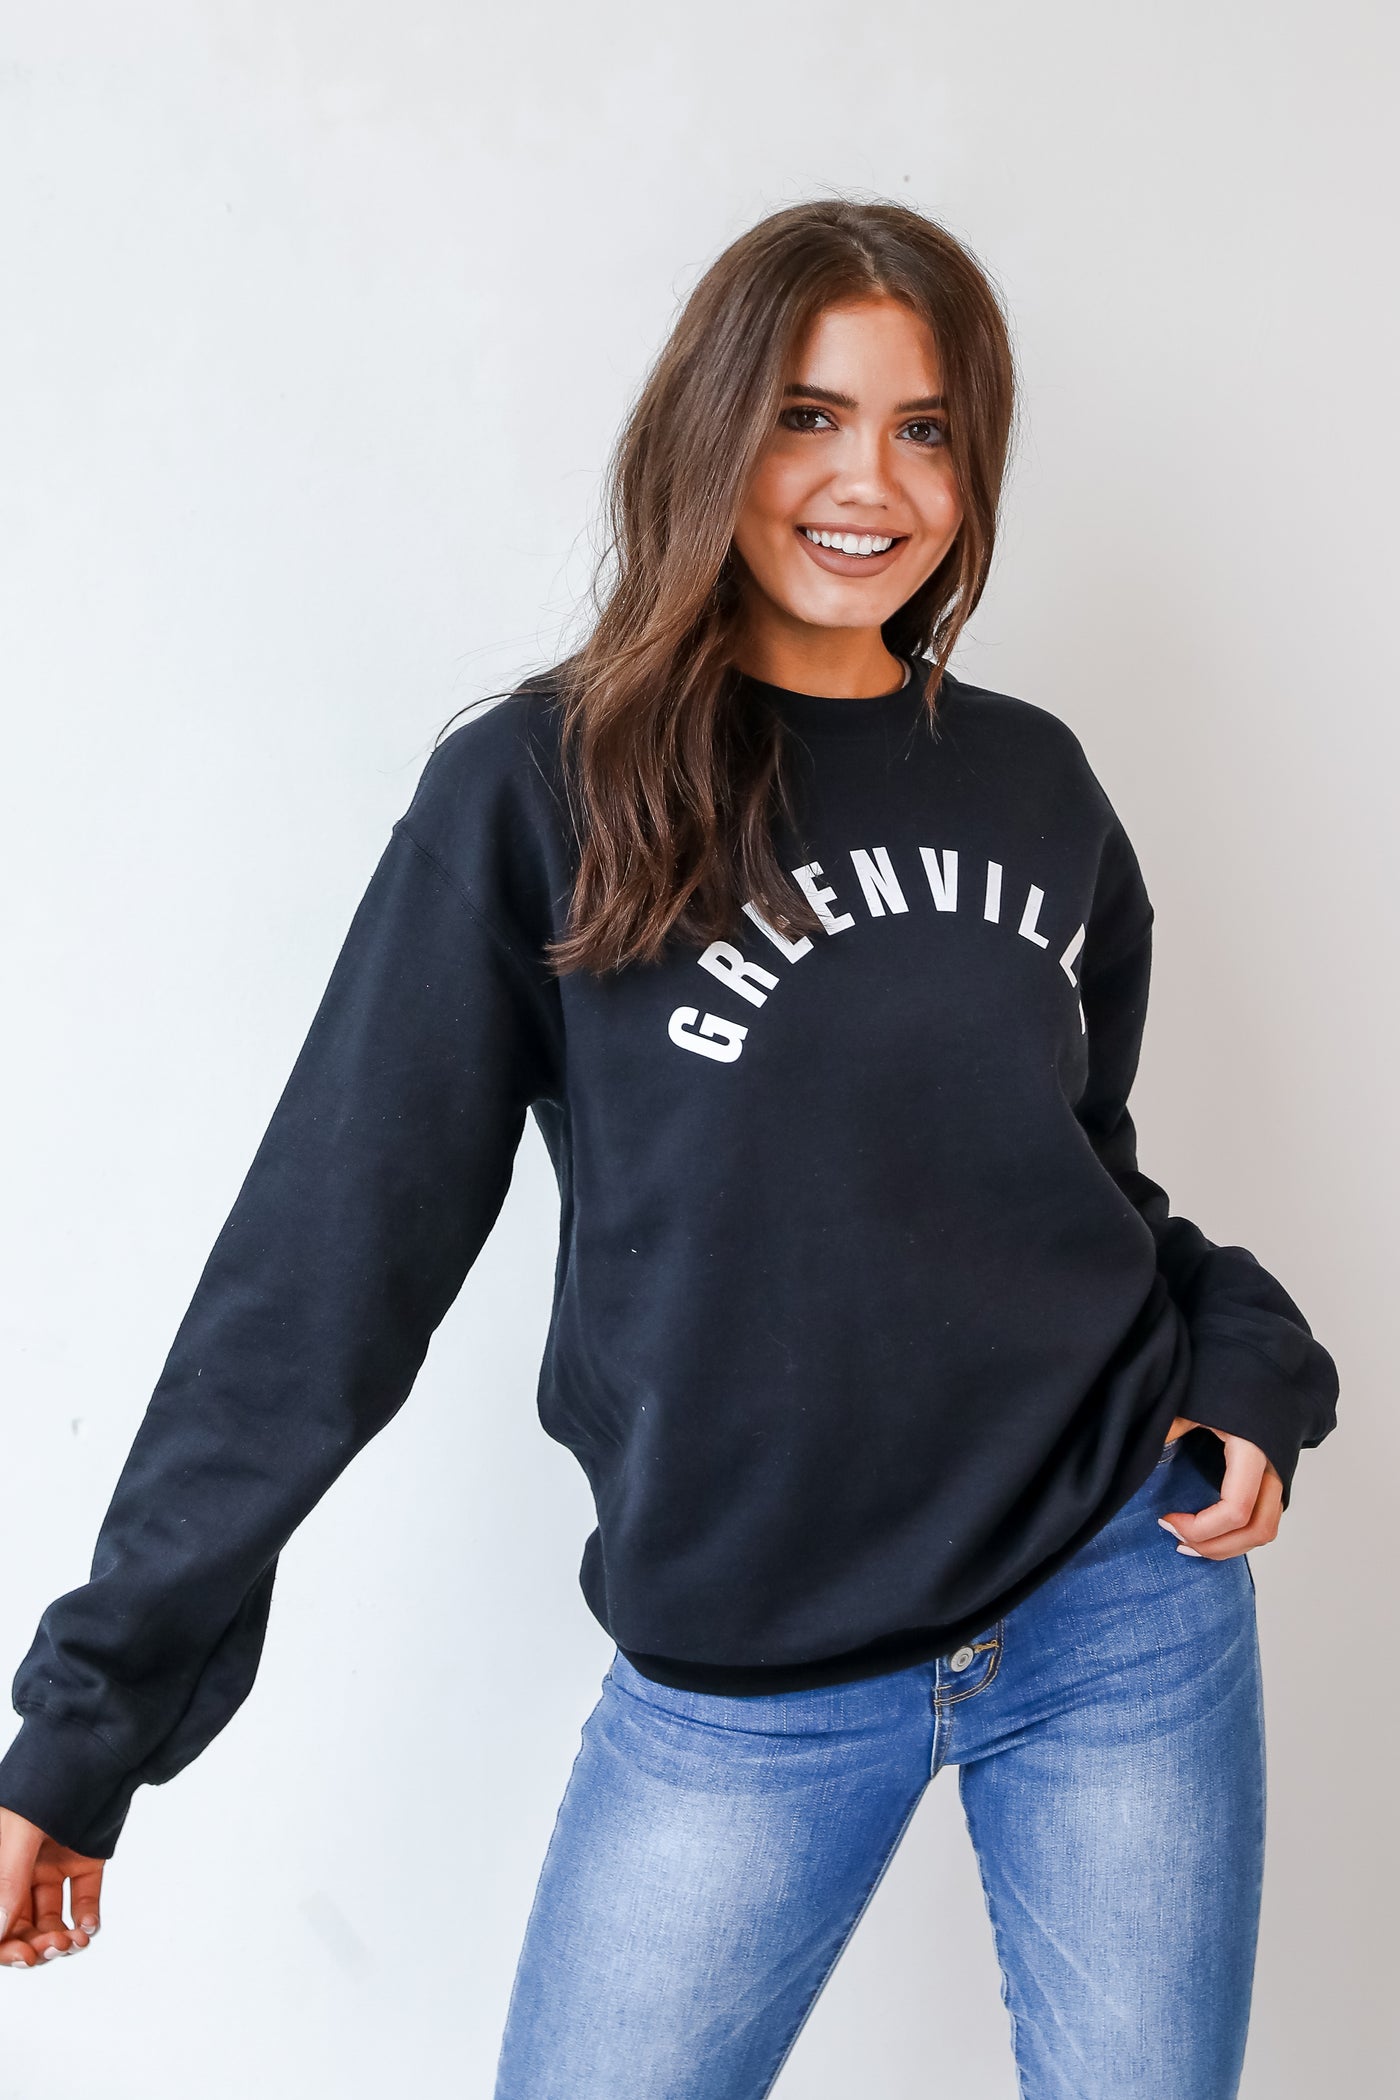 Greenville Sweatshirt